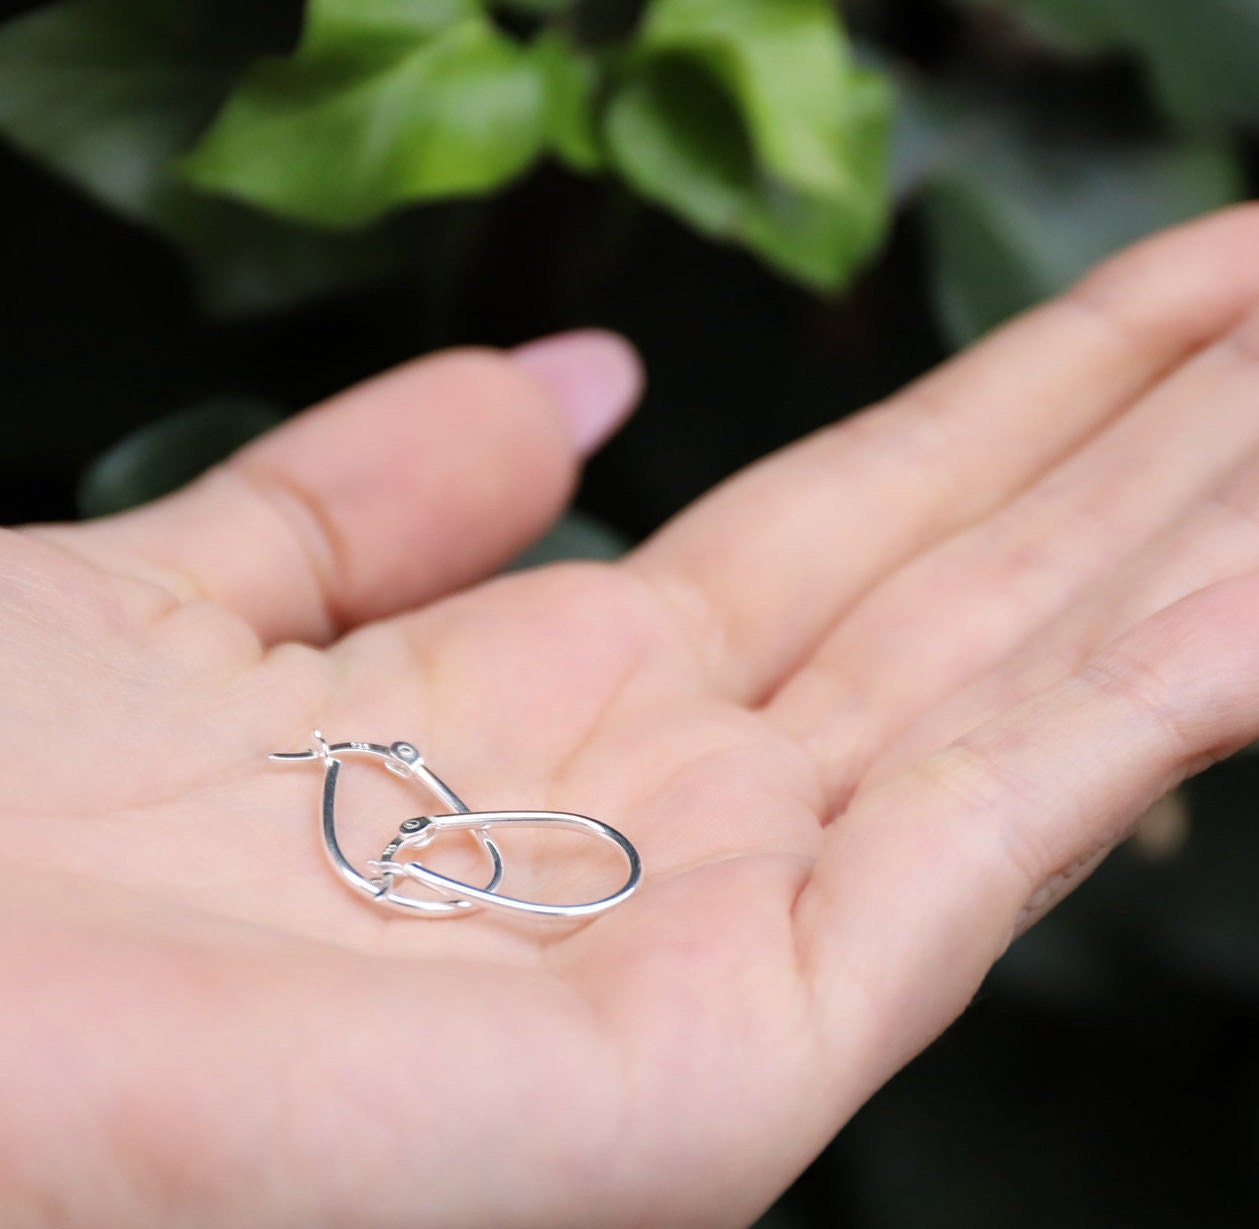 Handbag Thin Hoops | Simple Silver Hoops | Minimalist Earrings | Silver Geometric Hoops | Delicate Hoop Earring |